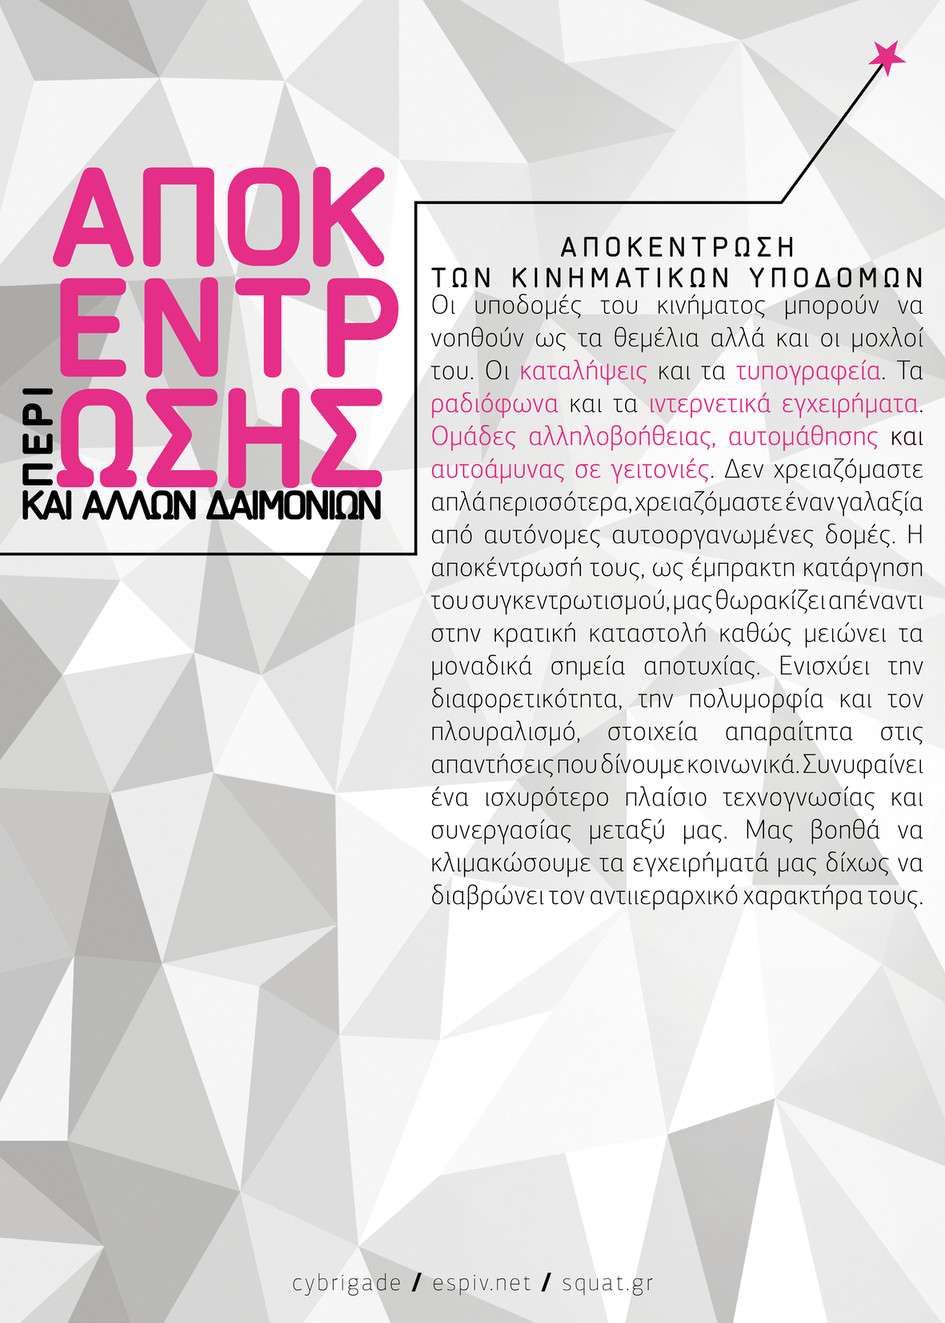 Αθήνα: Παρουσίαση της μπροσούρας “Περί αποκέντρωσης και άλλων δαιμονίων” [Σάββατο 20/05, 19:00]